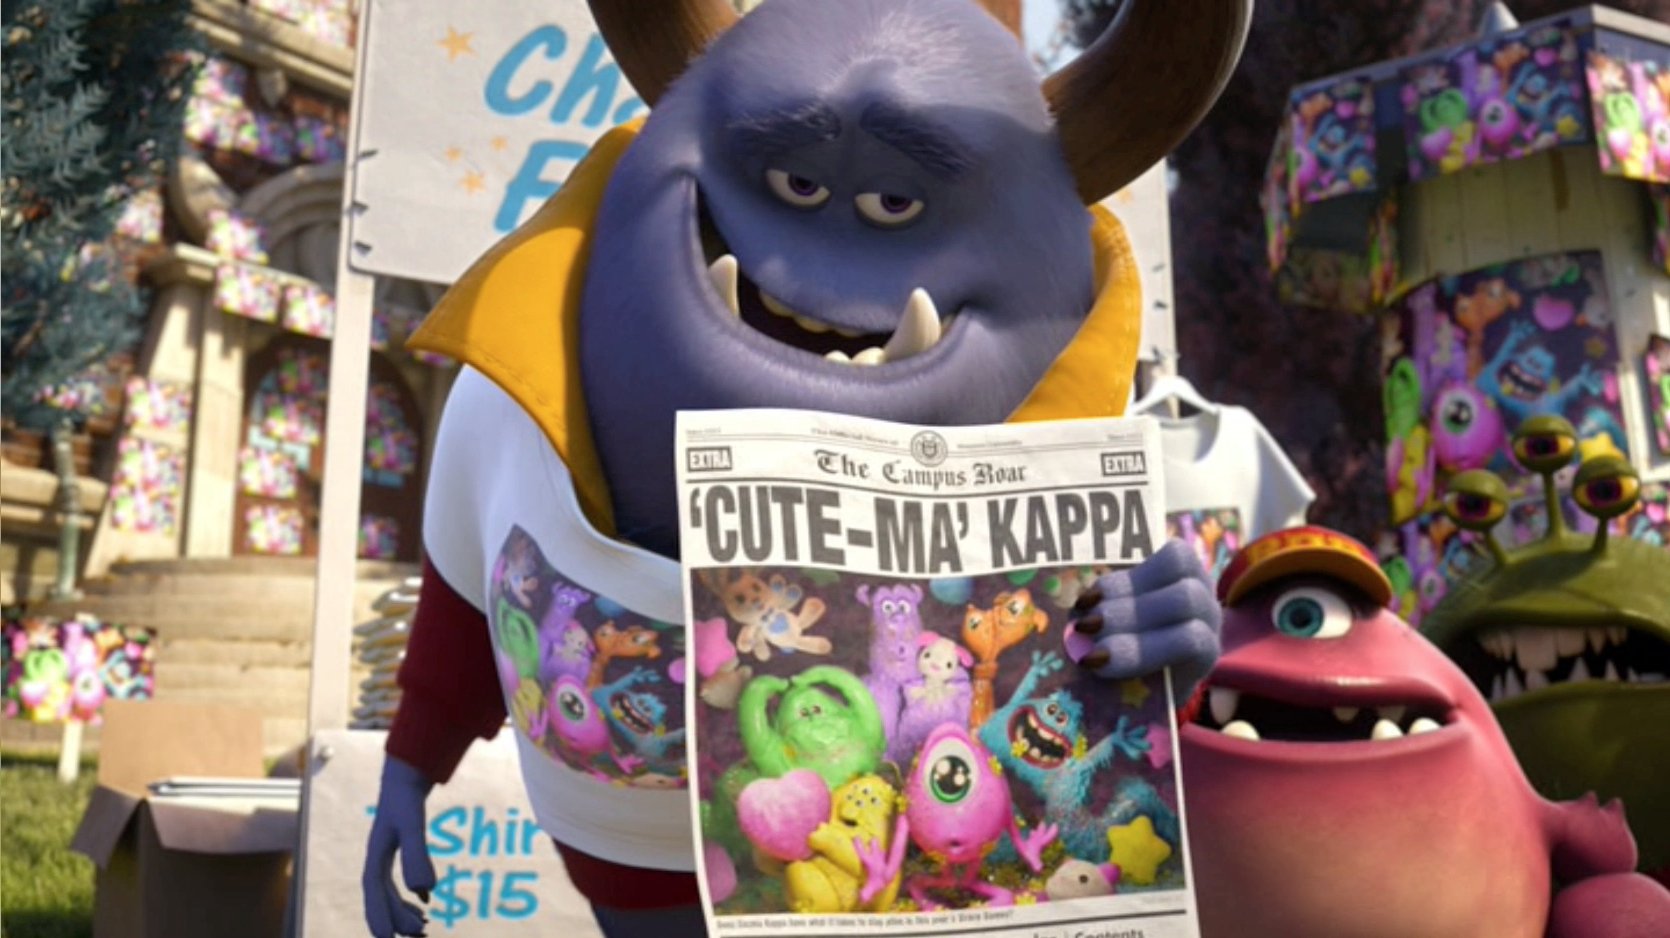 Giới thiệu với các bạn, Ma Kappa đáng yêu nhất trường đại học quái vật - một nhân vật đầy mạo hiểm, thân thiện và tràn đầy năng lượng tích cực. Hãy cùng thưởng thức hành trình của anh ta cùng nhóm bạn tại phim Monsters University.